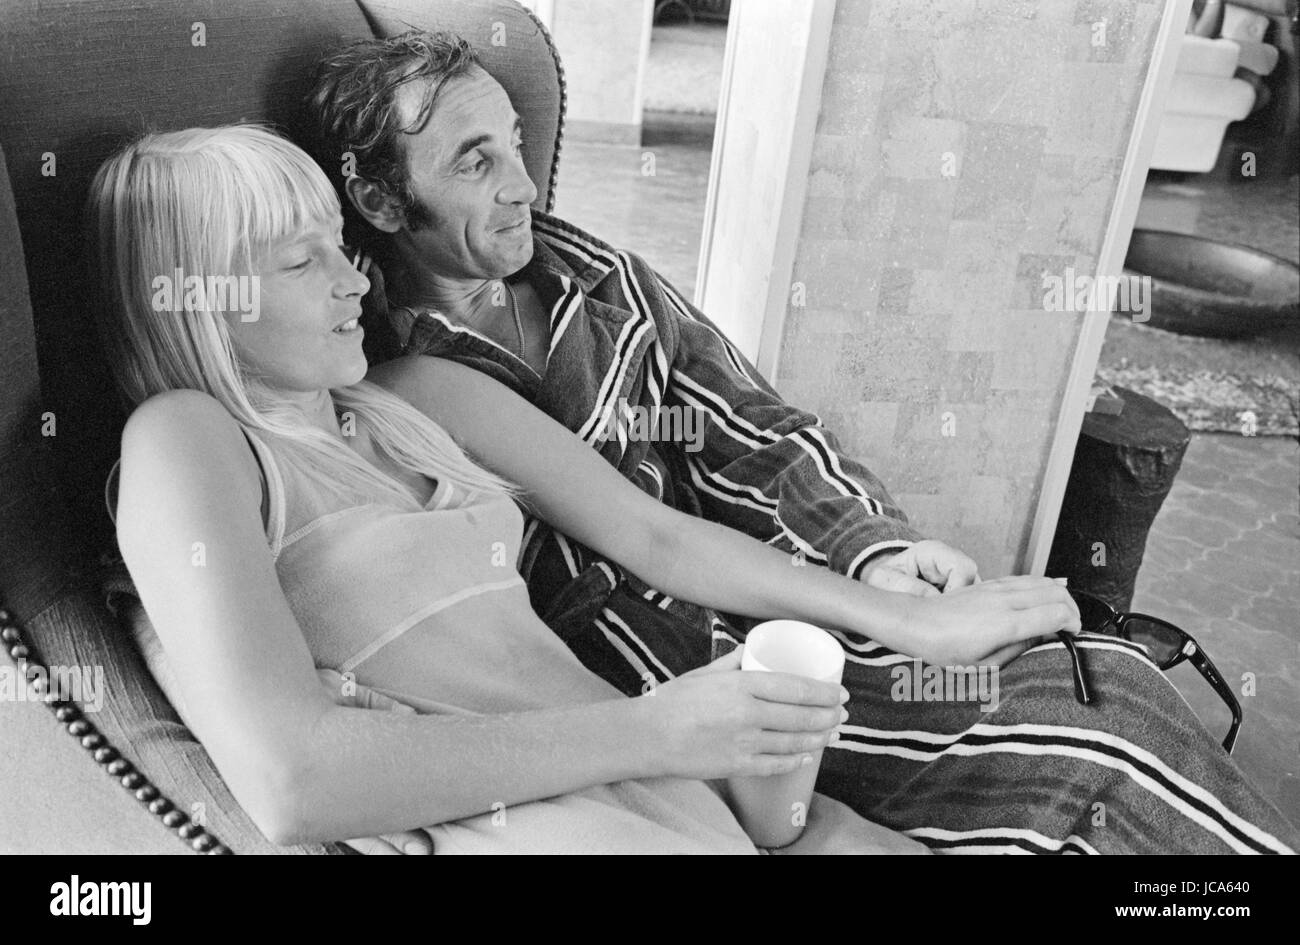 Charles Aznavour avec femme Ulla Thorsell profiter de leurs vacances dans leur maison à Mandelieu-La-Napoule (Alpes-Maritimes, France). Été 1970 Photo Michael Holtz Banque D'Images